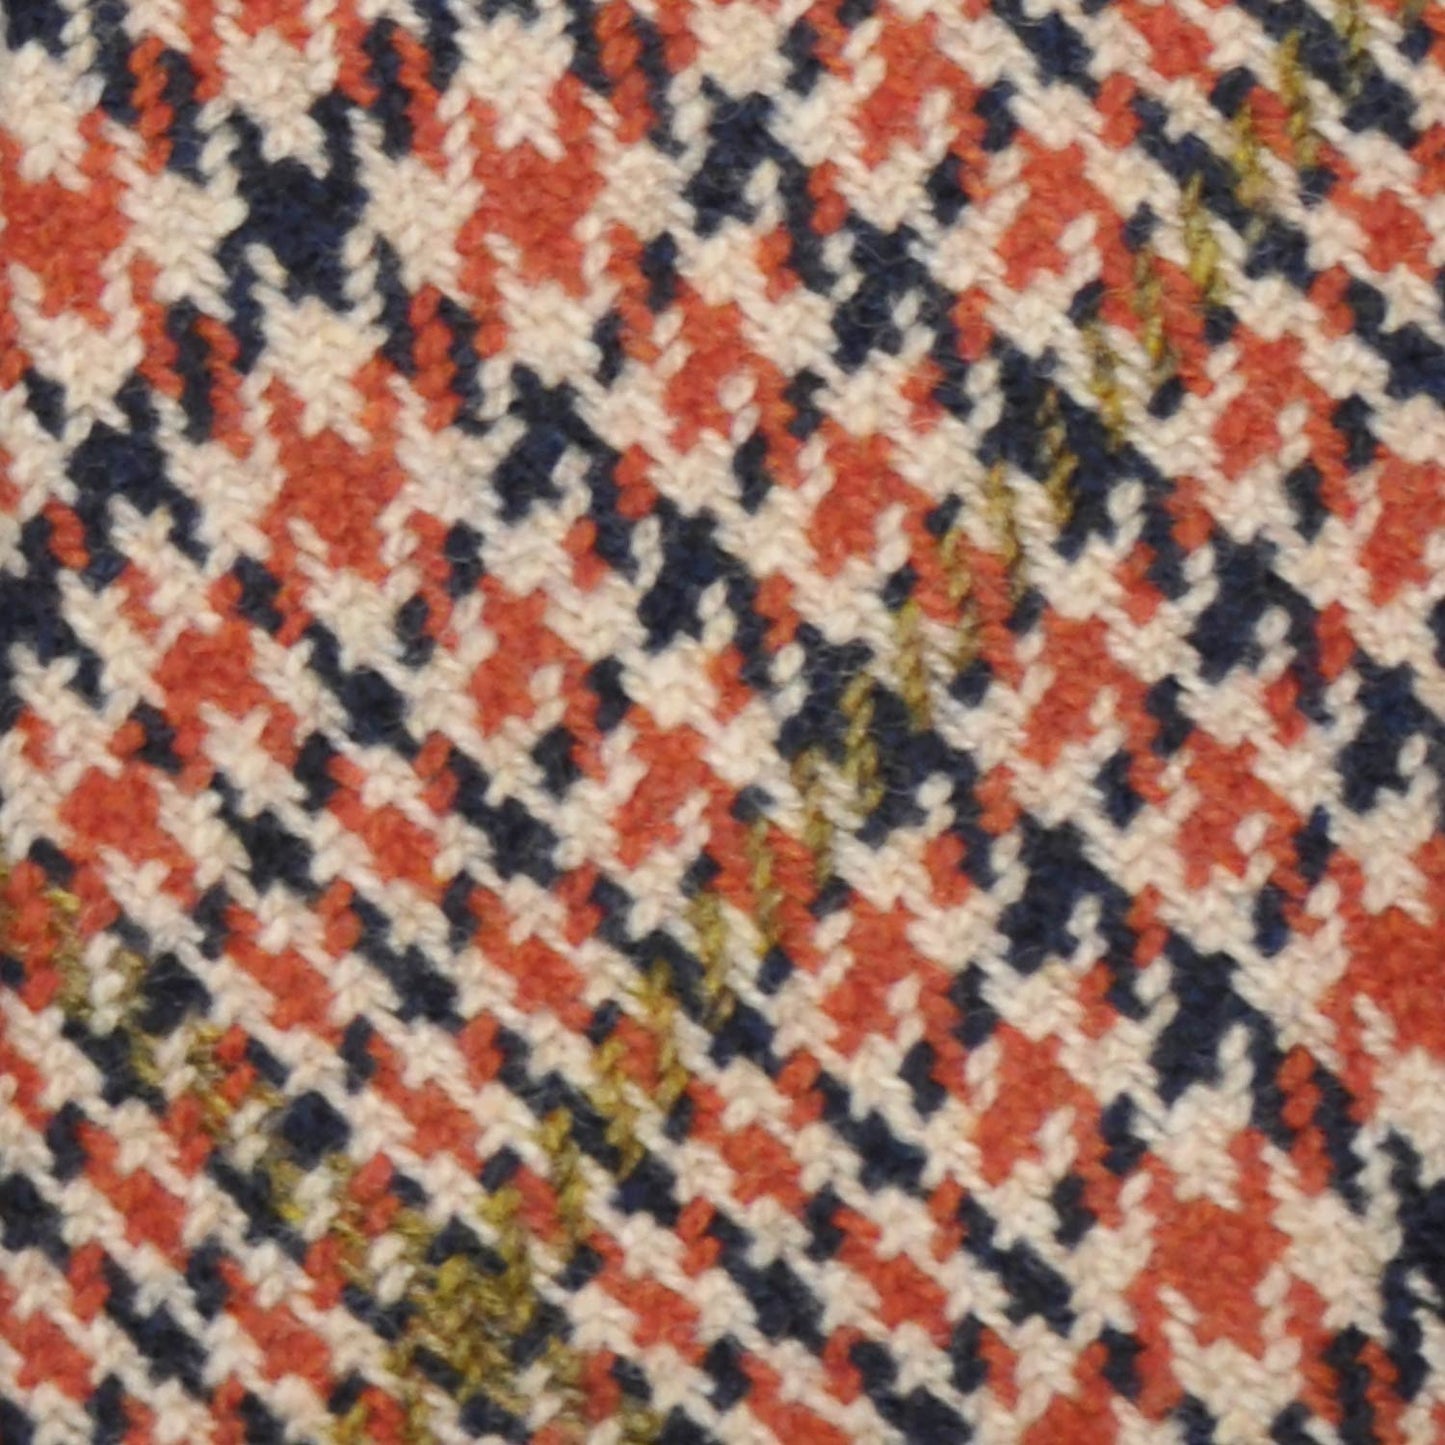 Orange Tweed Tie Handmade Unlined Houndstooth Pattern